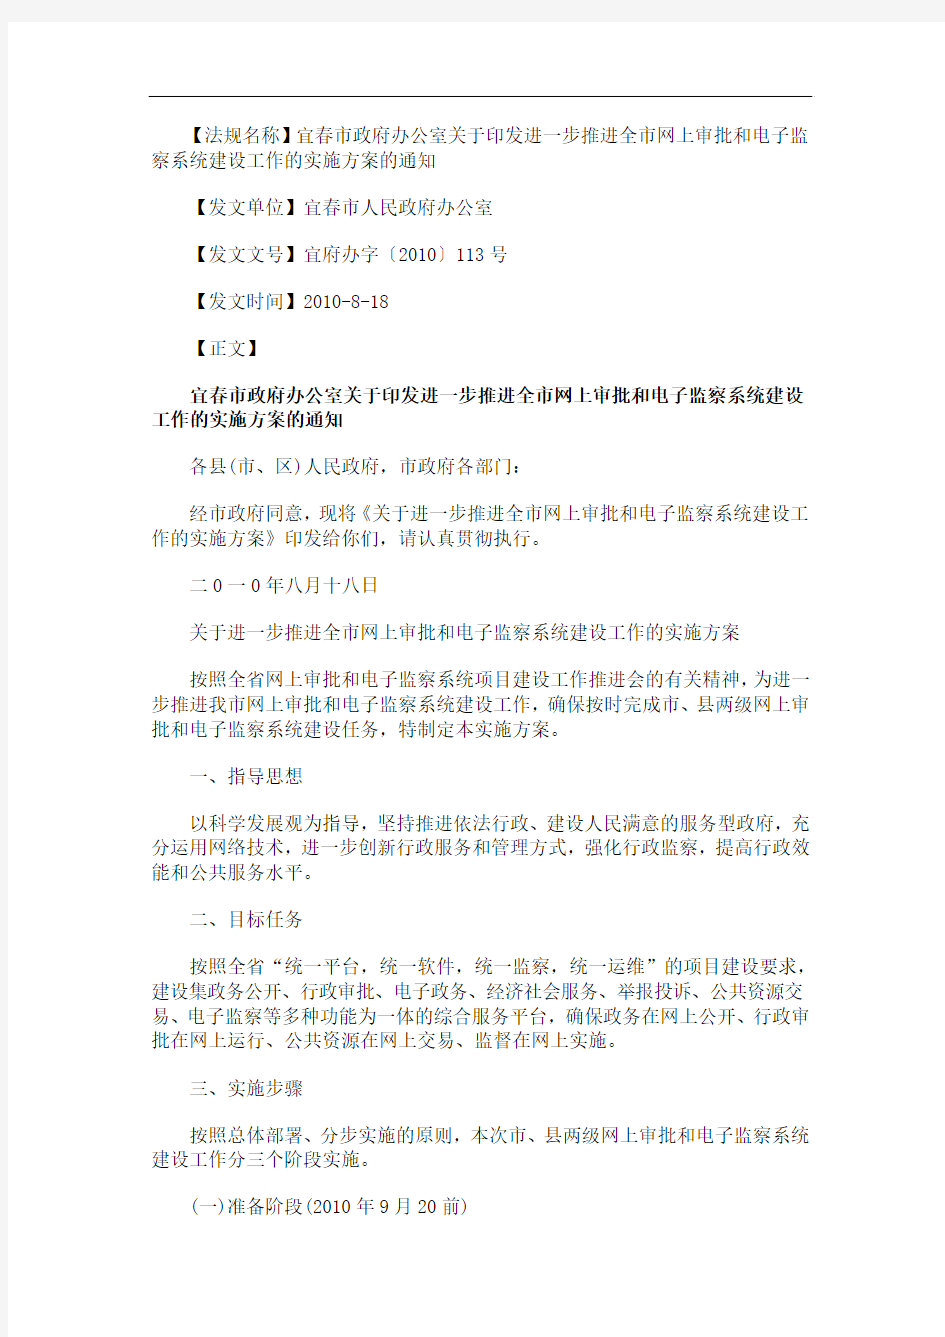 中国民族宜春市政府办公室关于印发进一步推进全市网上审批和电子监察系统建设工作的实施方案的通知